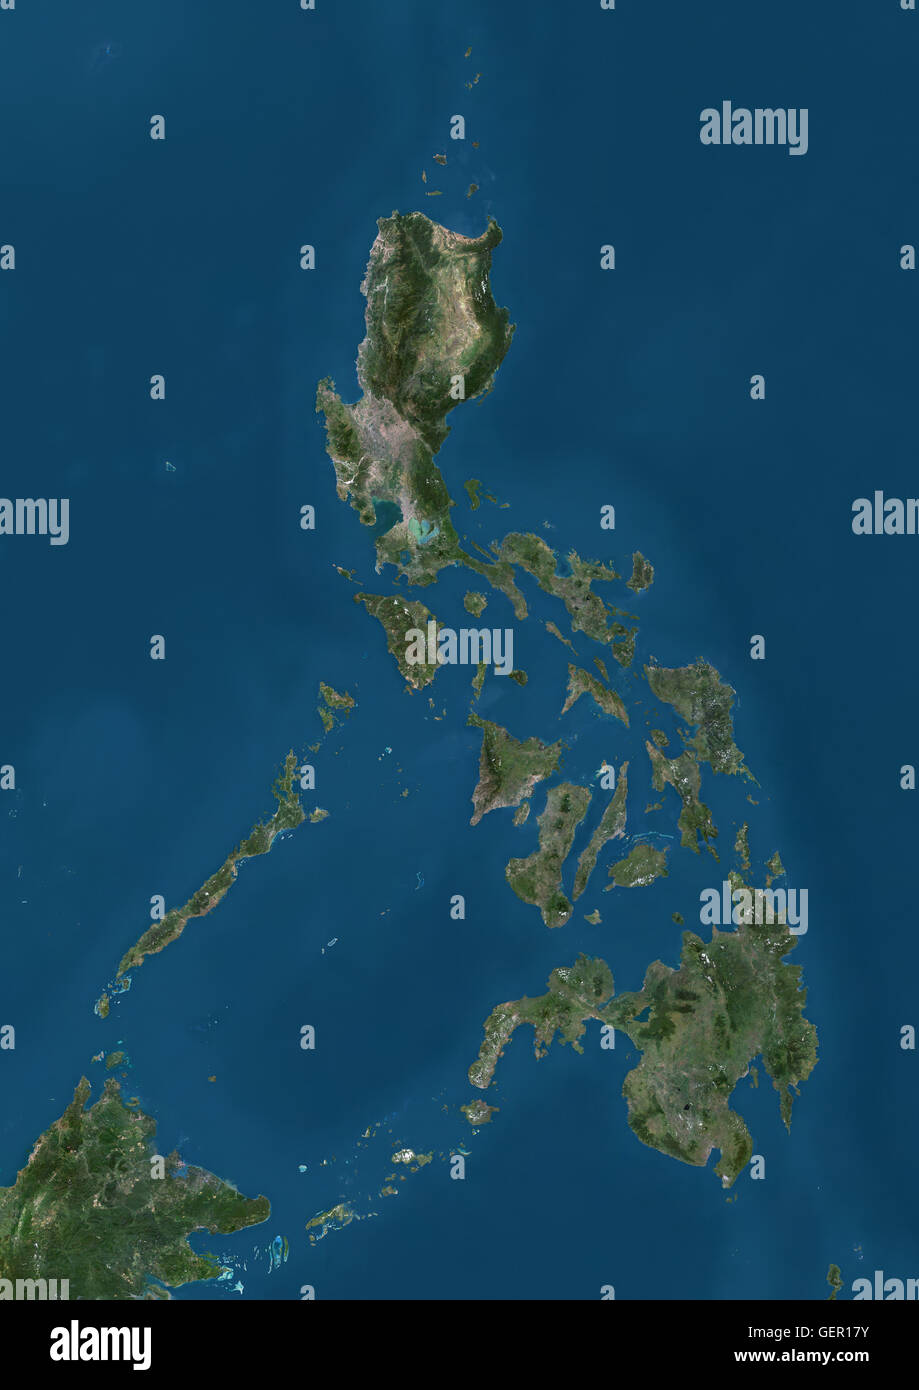 Vista satellitare delle Filippine. Questa immagine è stata elaborata sulla base dei dati acquisiti dai satelliti Landsat. Foto Stock